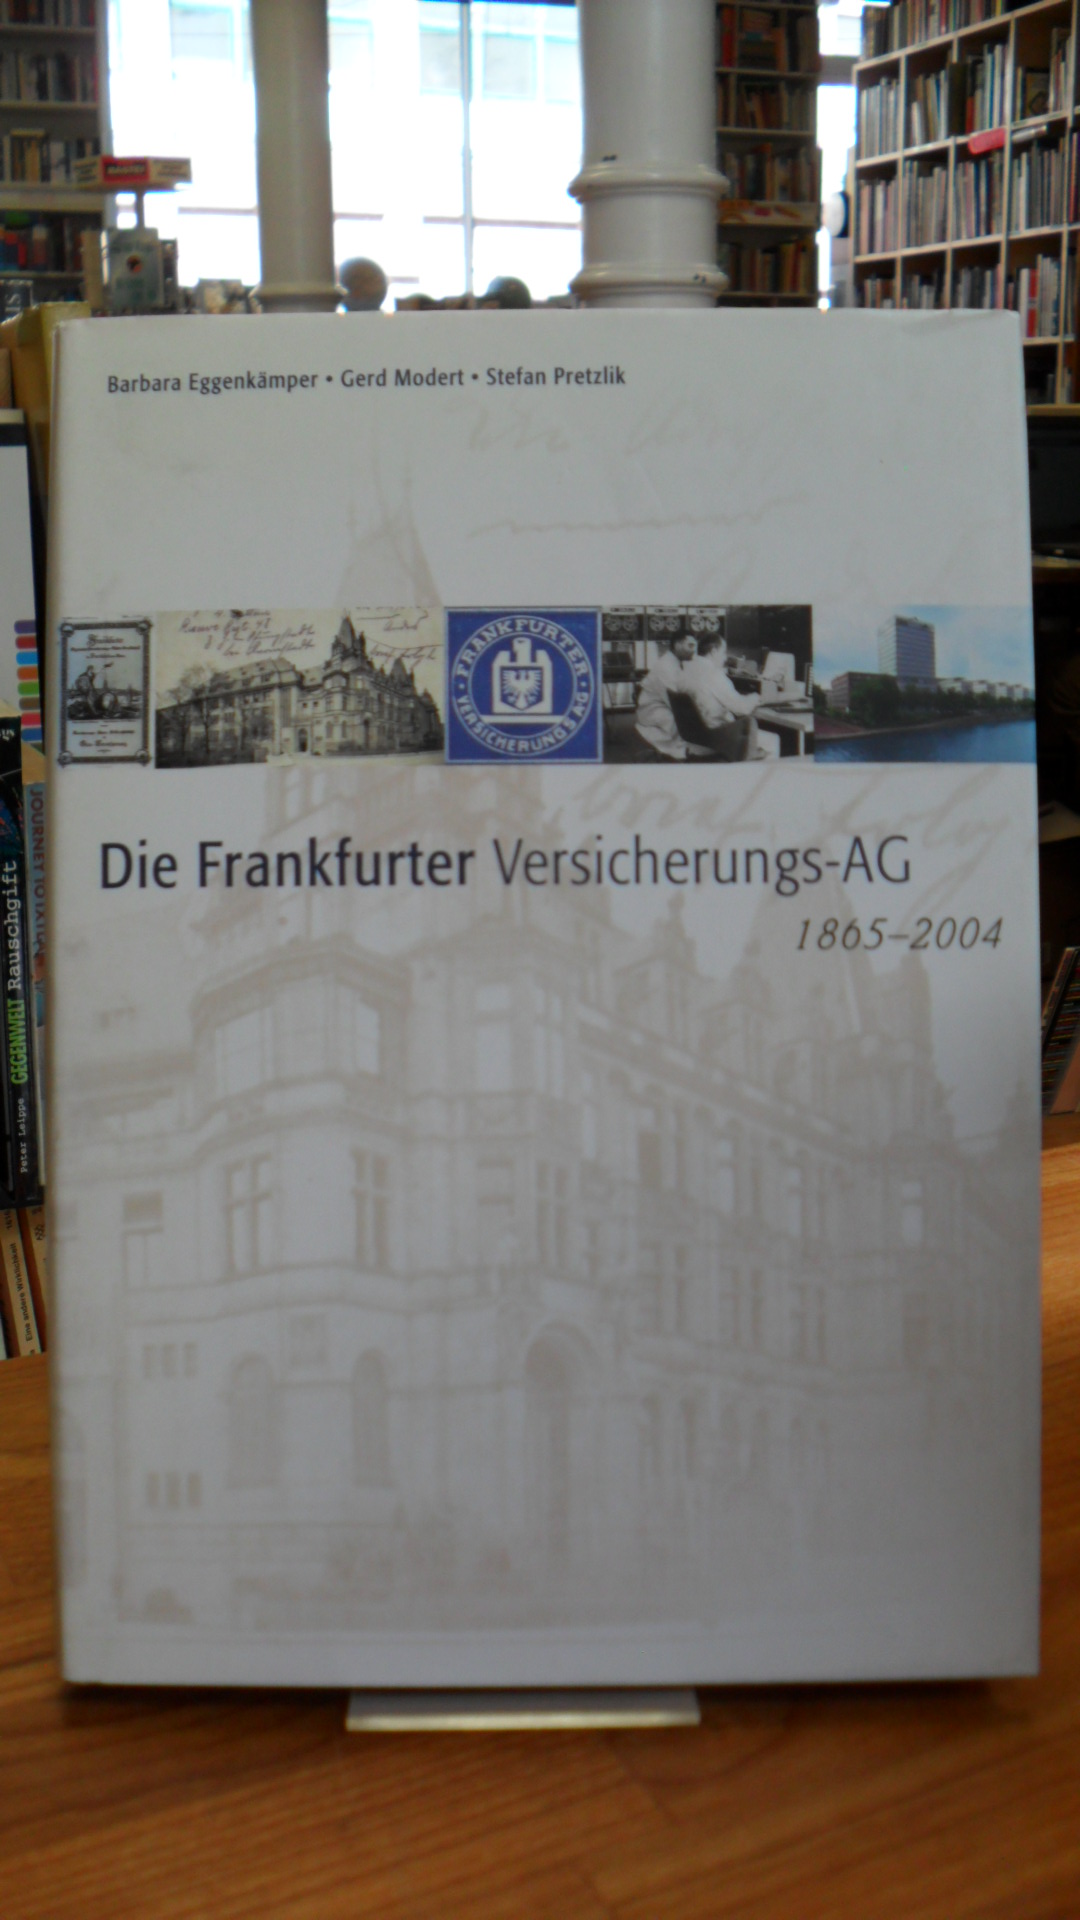 Eggenkämper, Die Frankfurter Versicherungs-AG – 1865 – 2004,